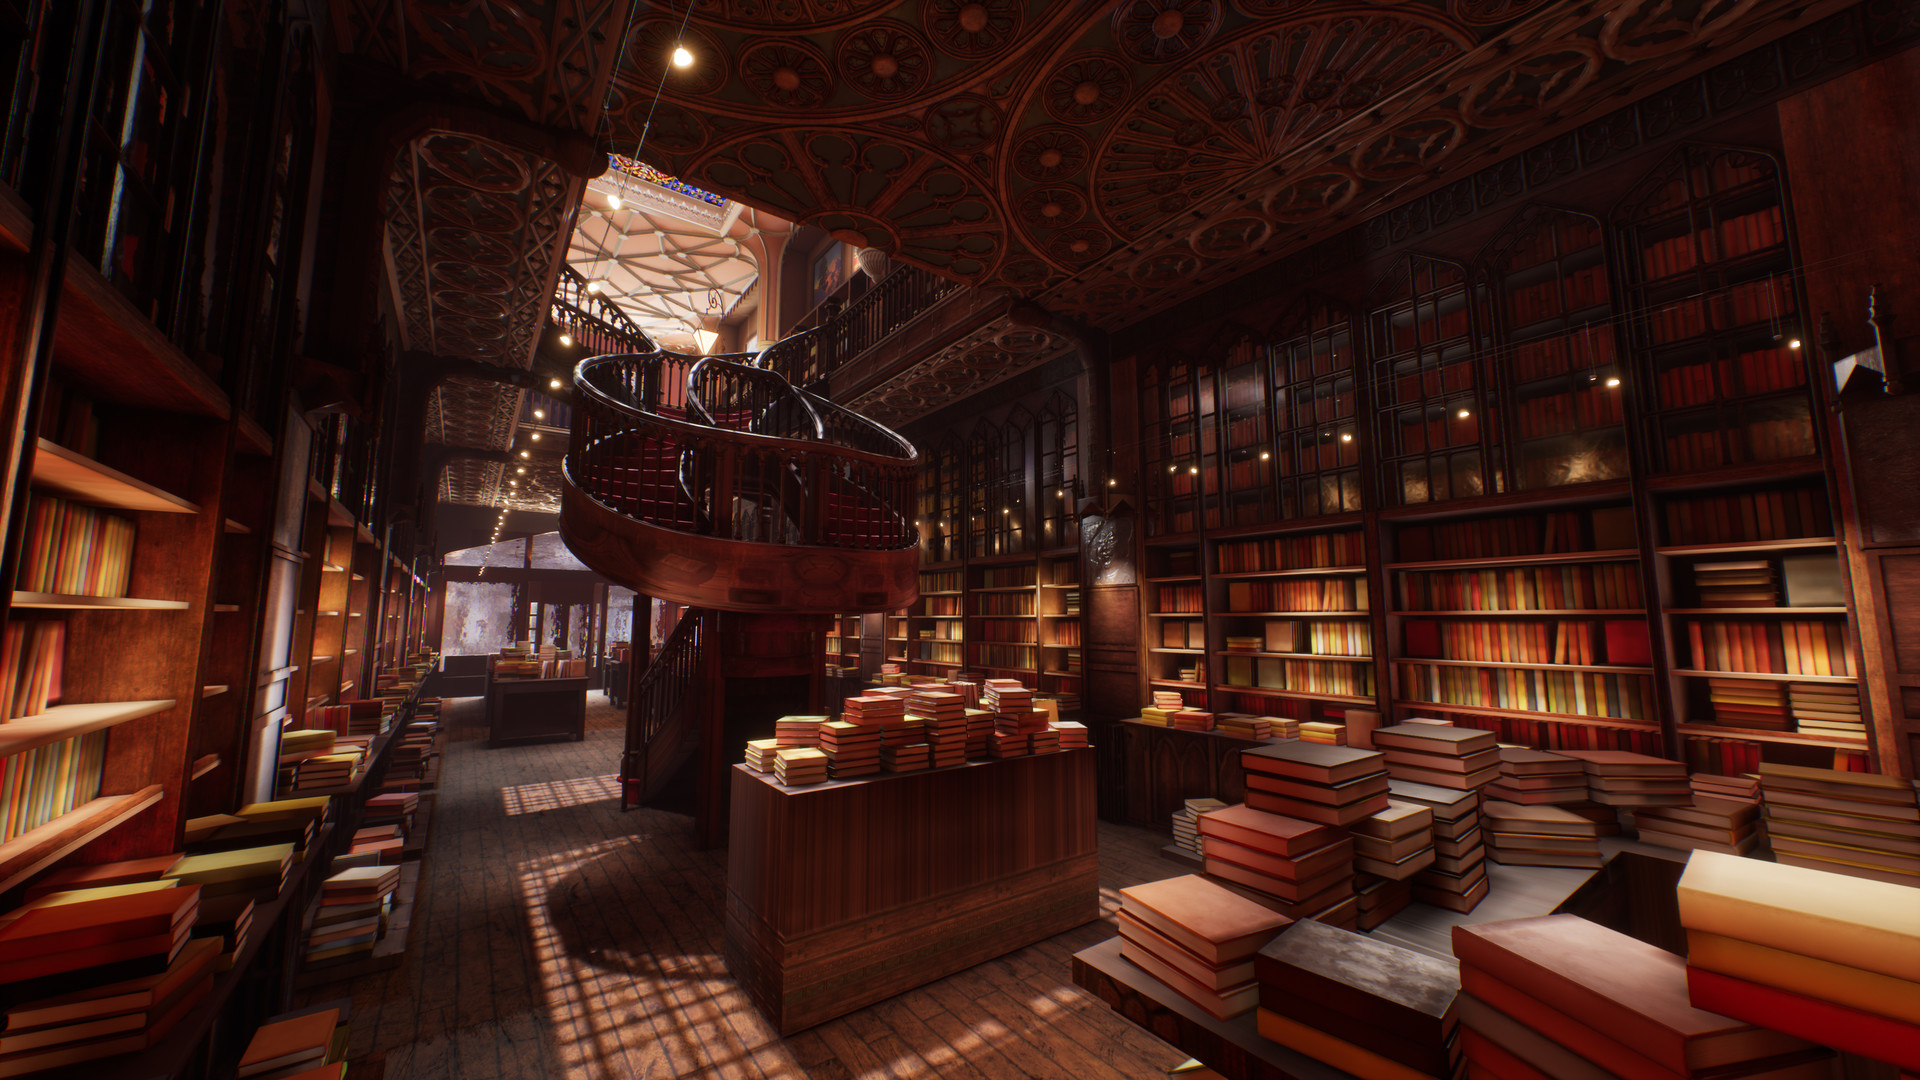 Fantasy worlds электронная библиотека. Библиотека для Unreal engine 4. Библиотека арт. Книжные полки фэнтези. Фэнтези аудитория.